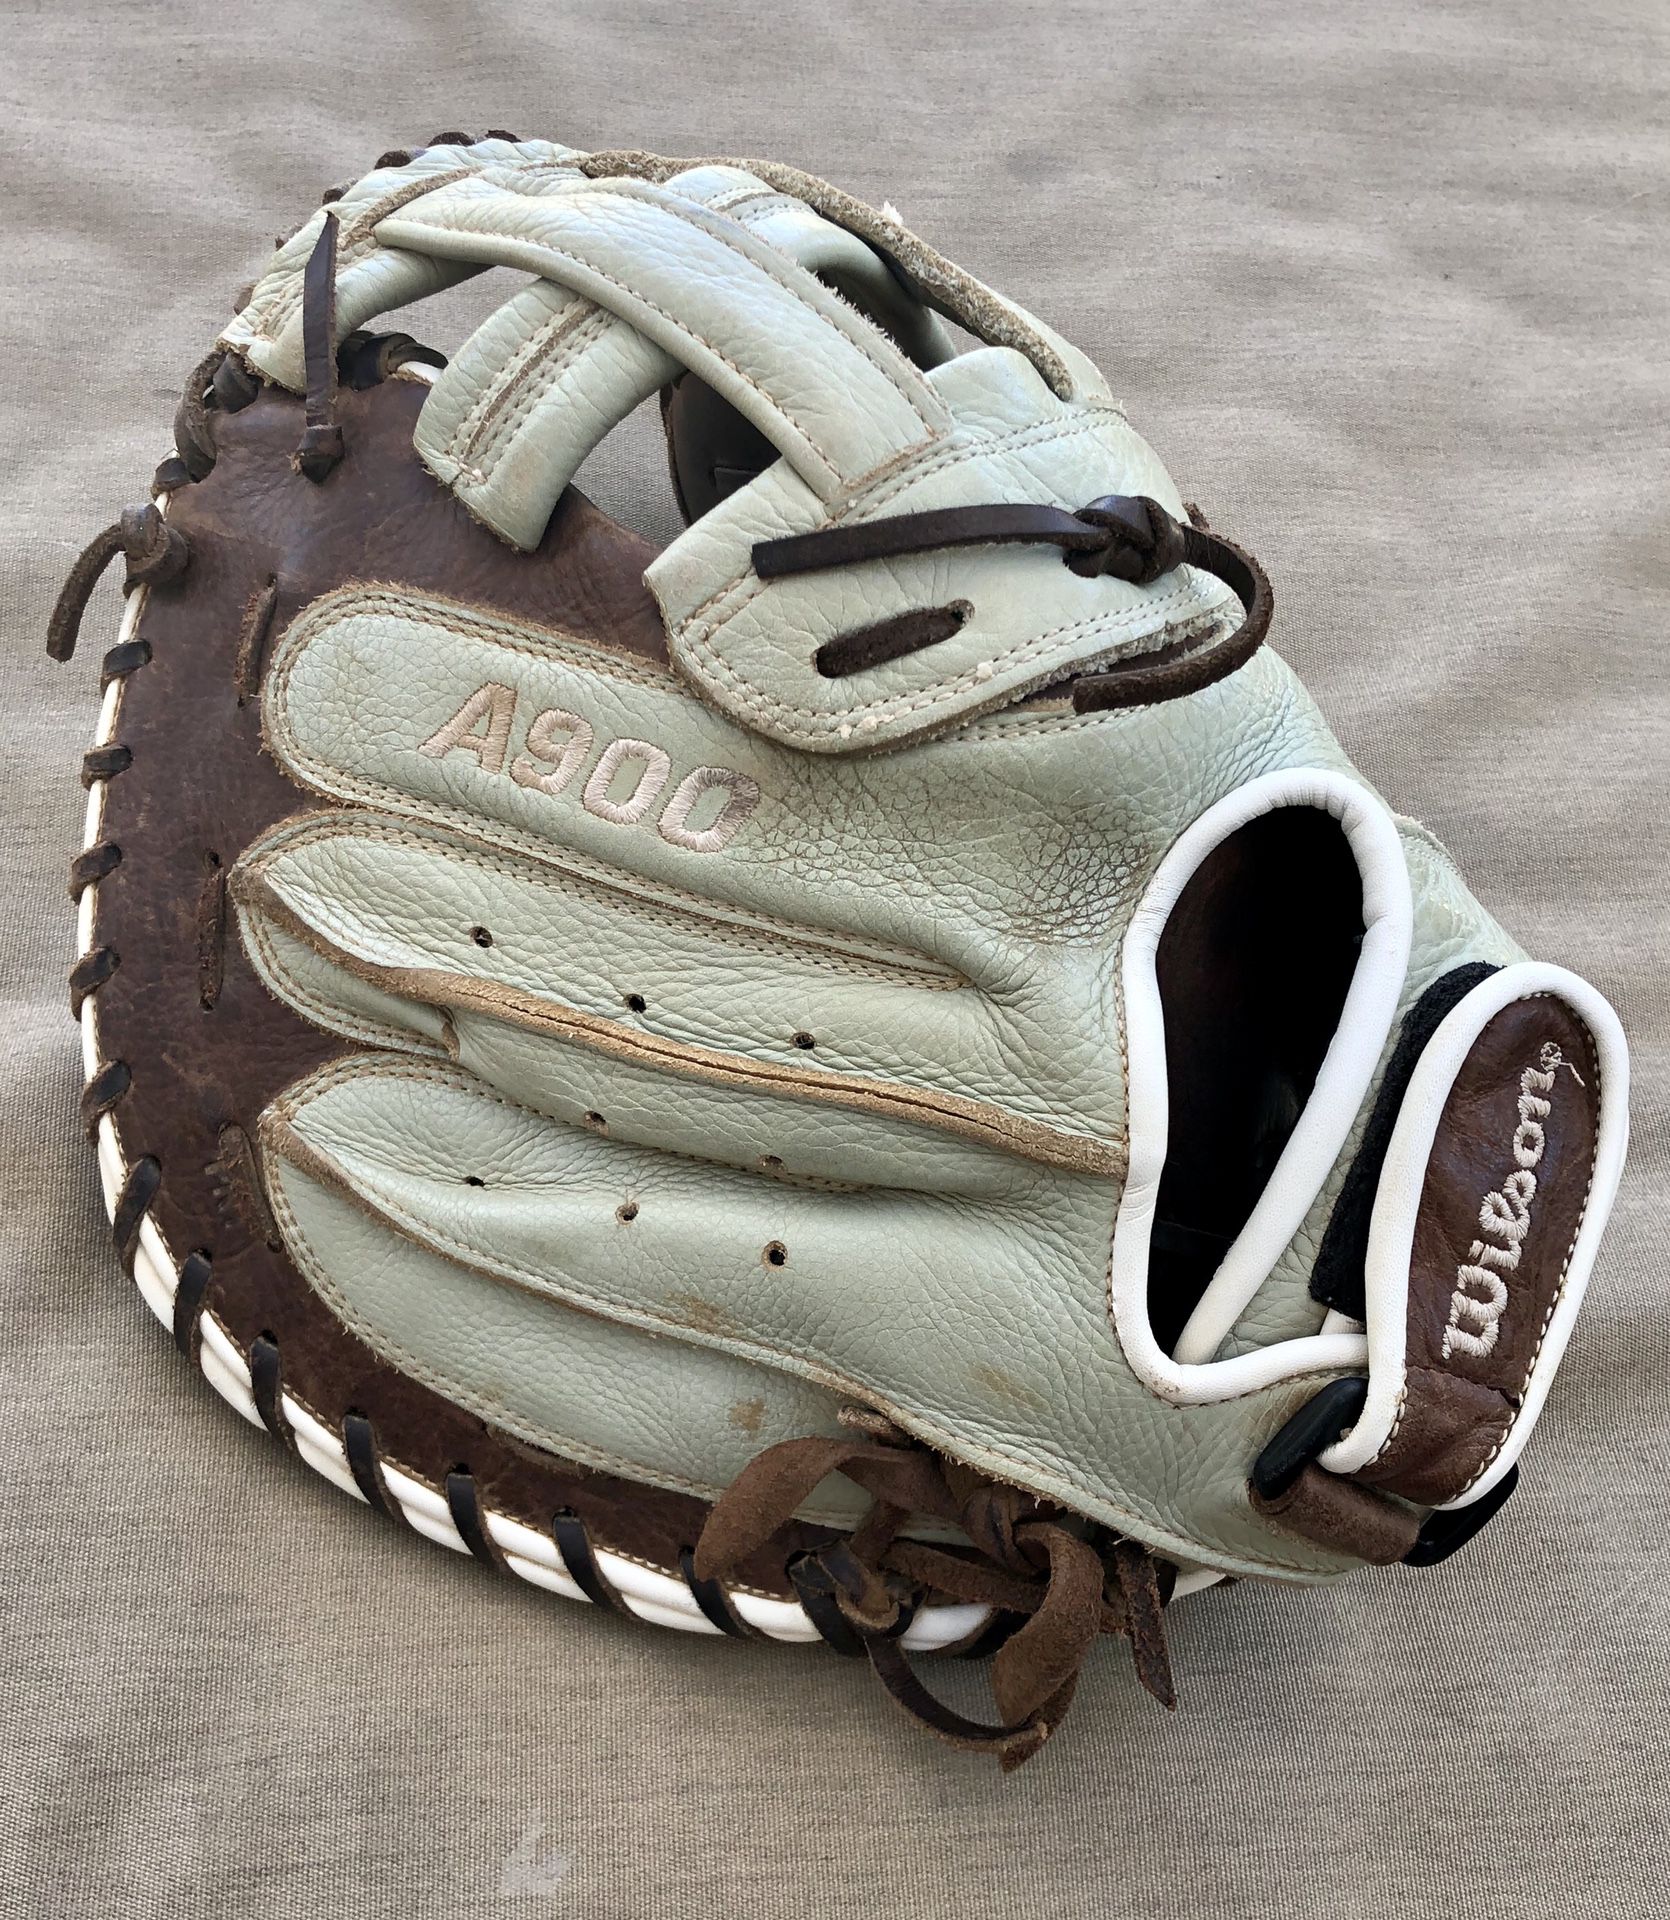 Wilson A900 Catcher’s Glove